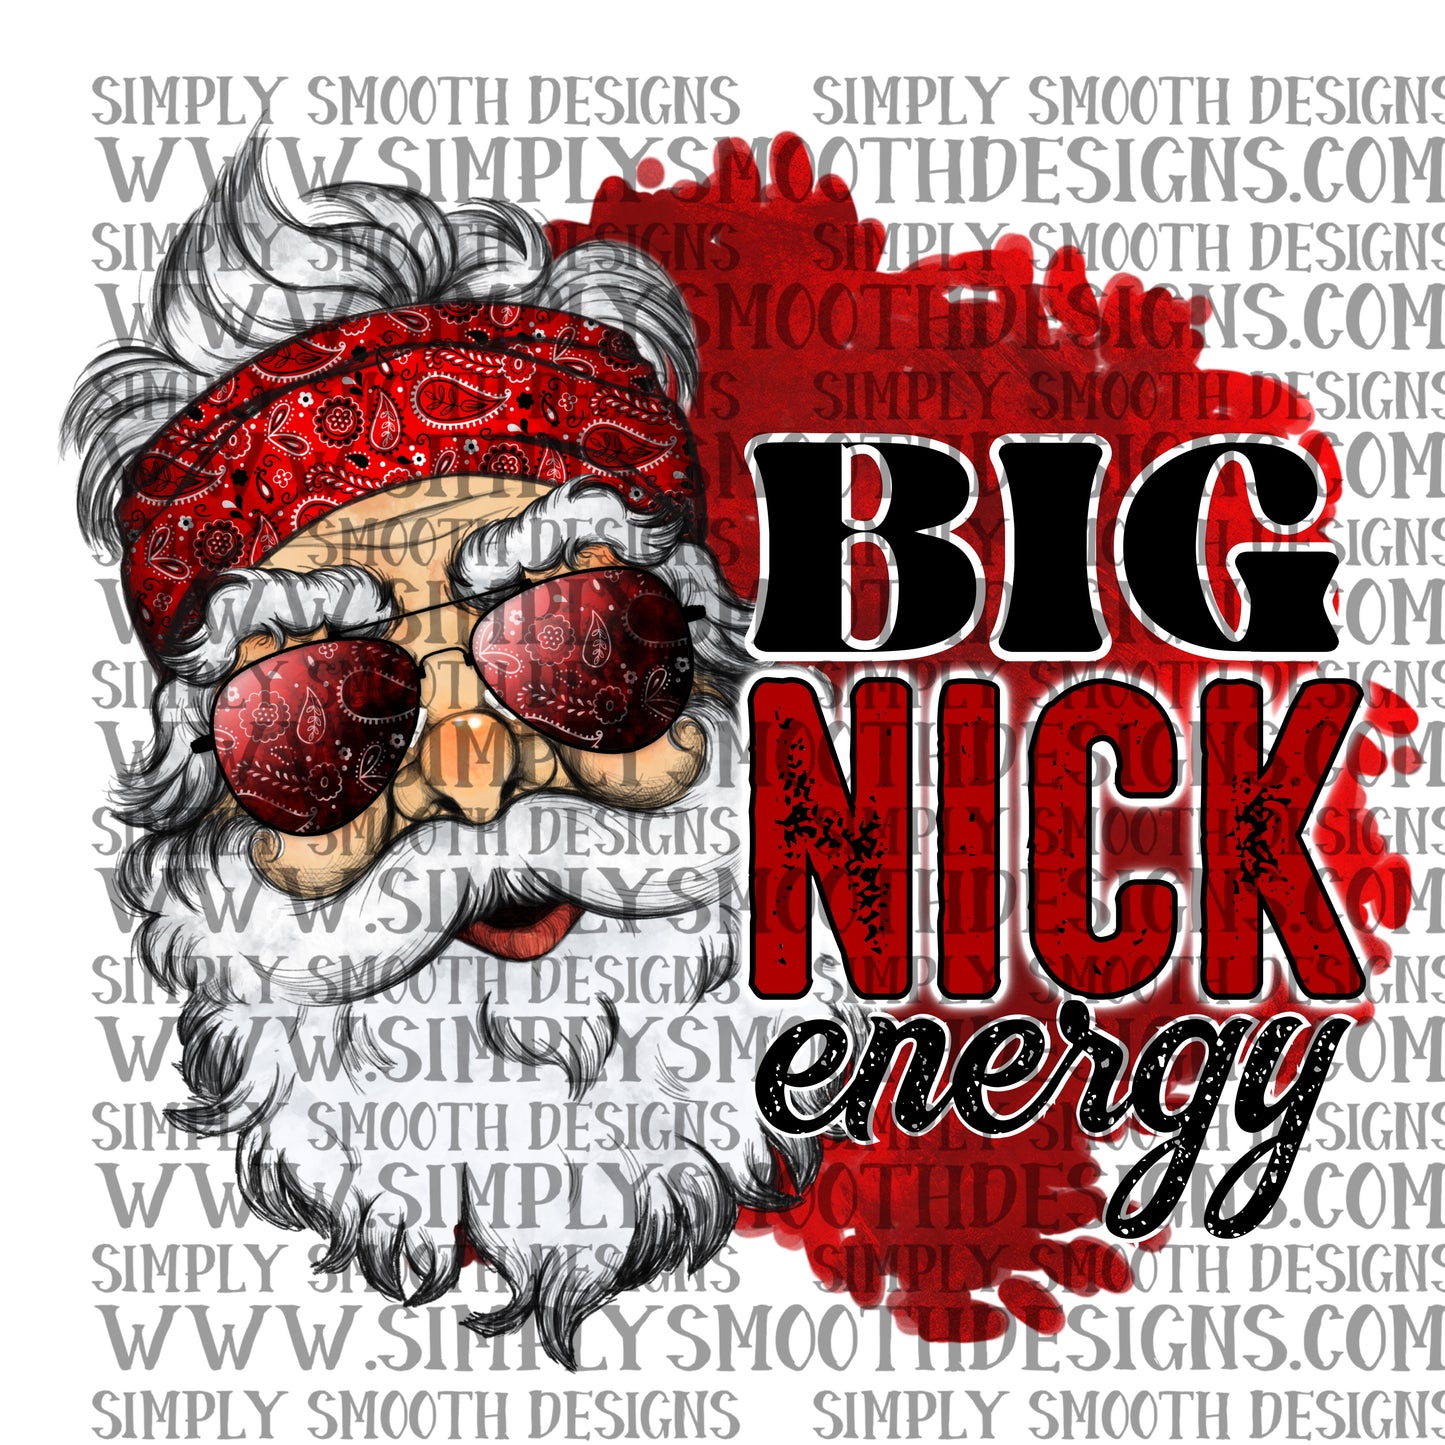 Big nick energy